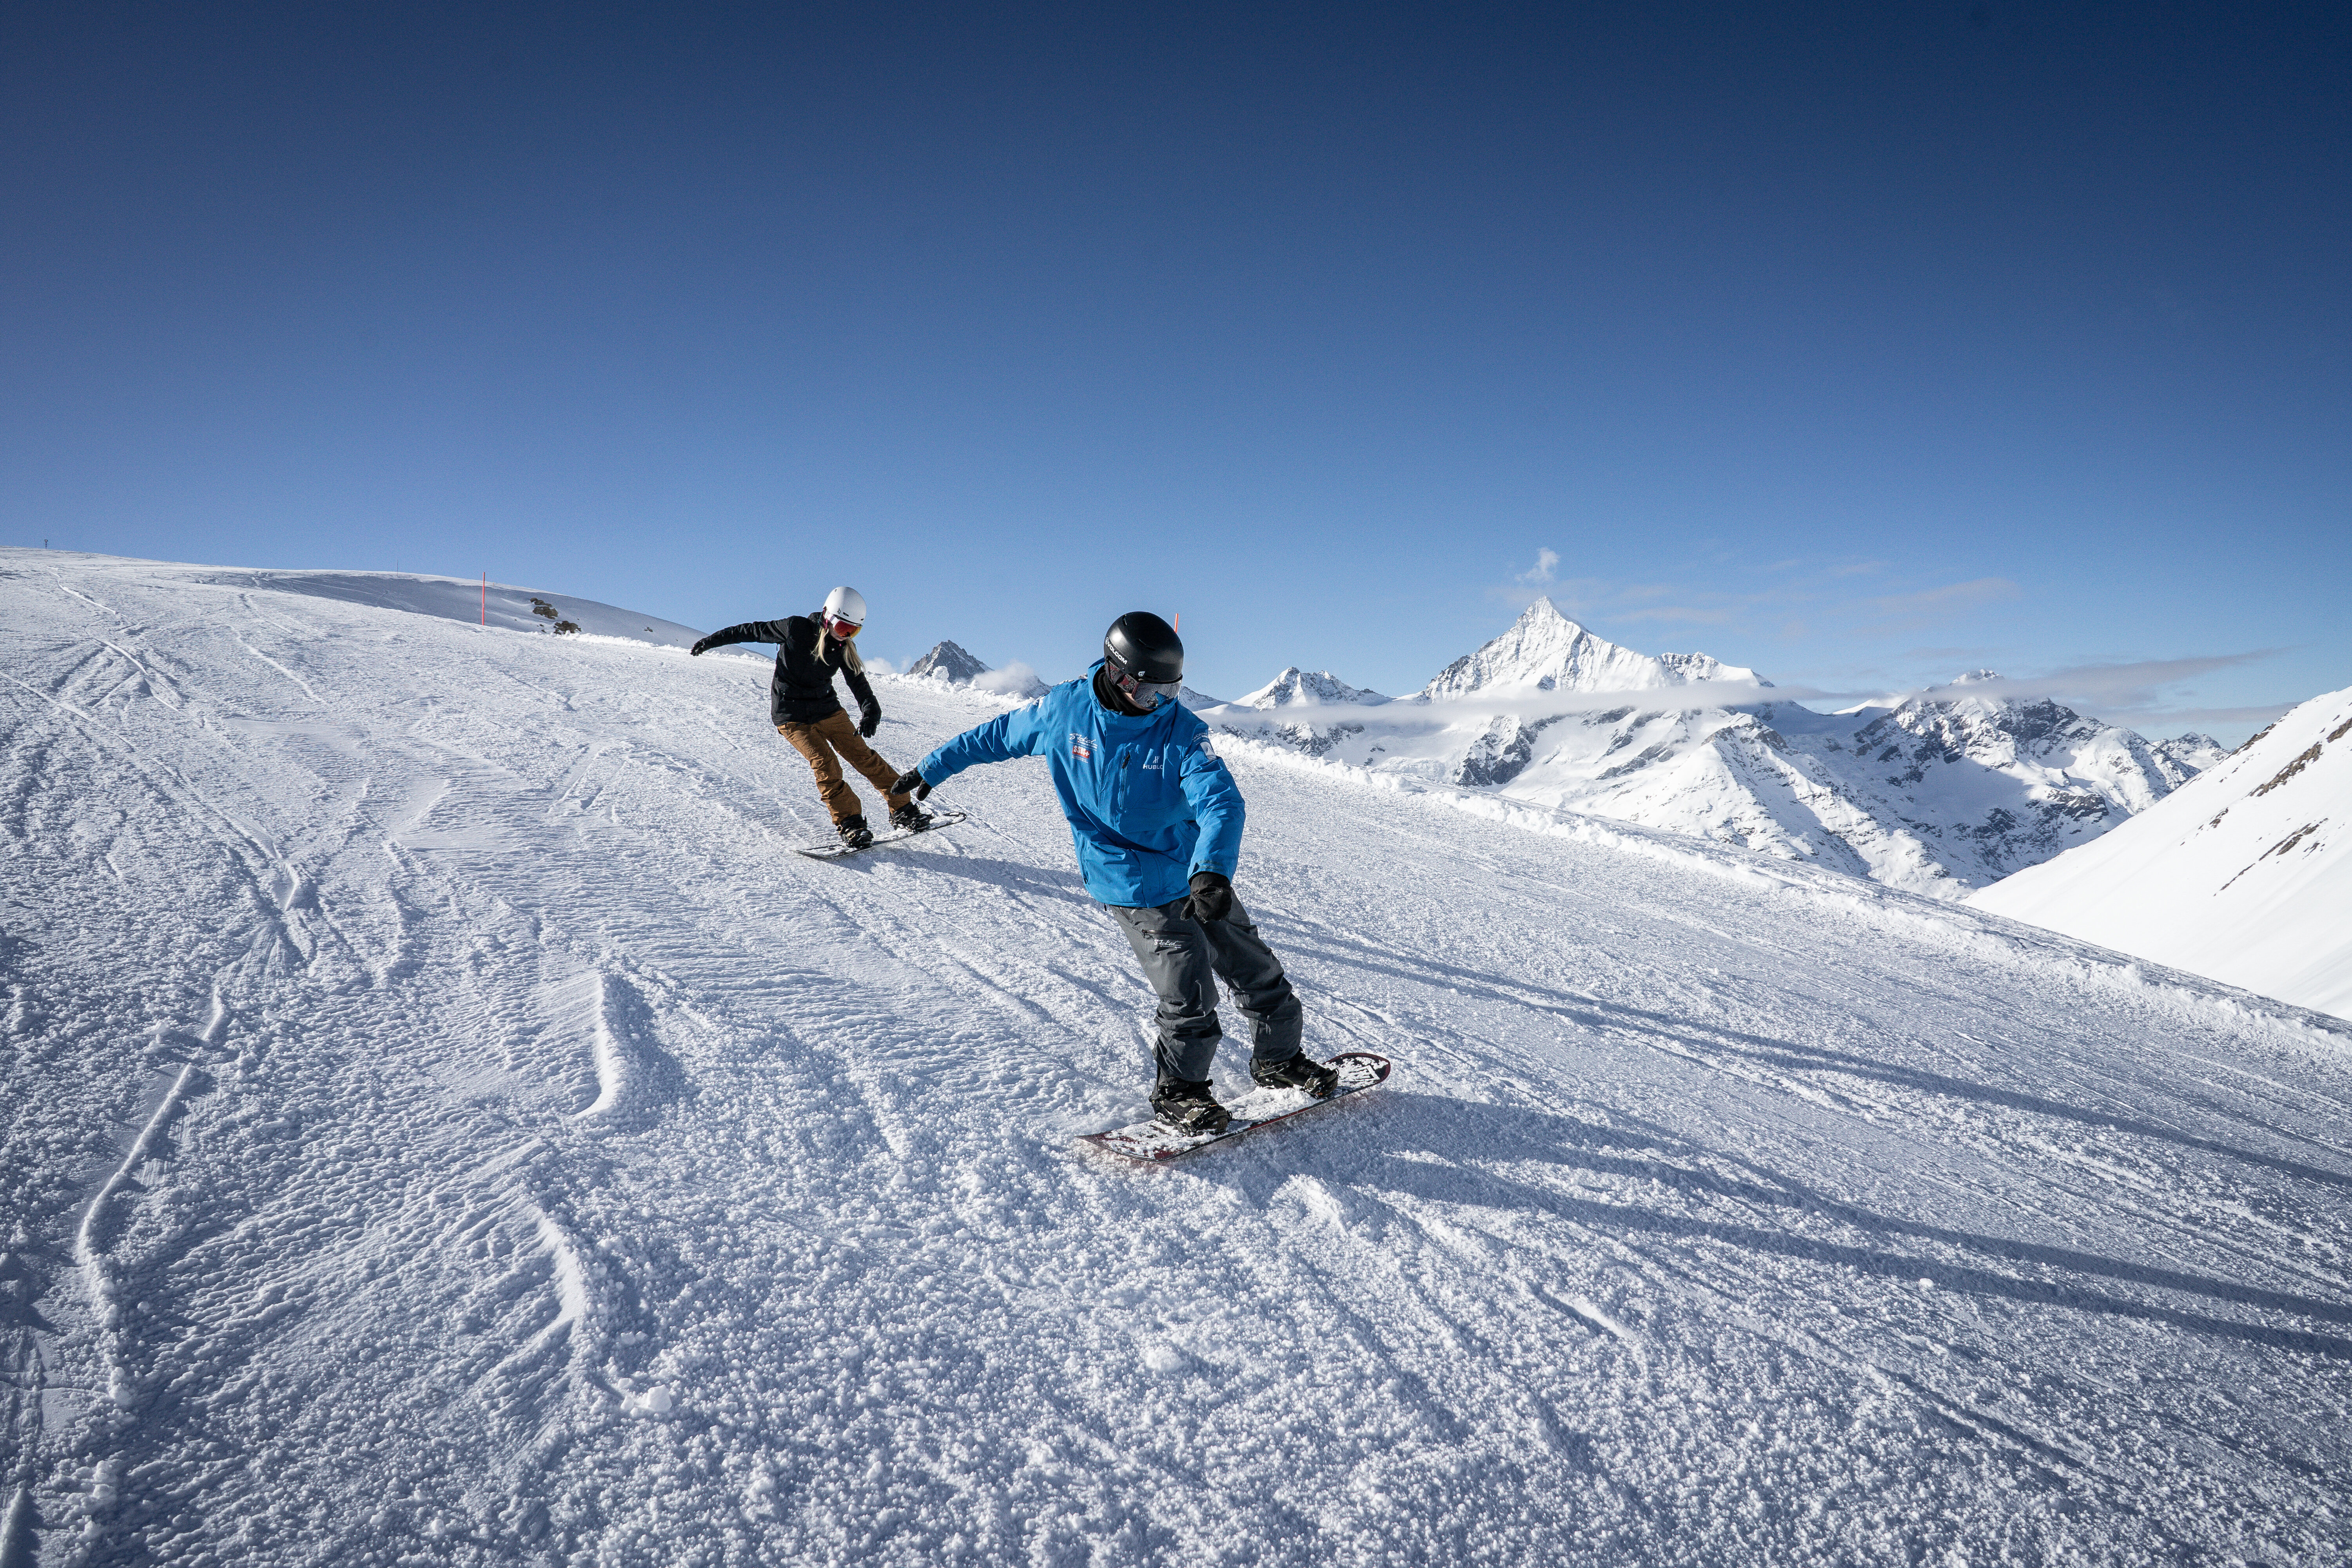 Snowboard lessons, Zermatt, Swiss